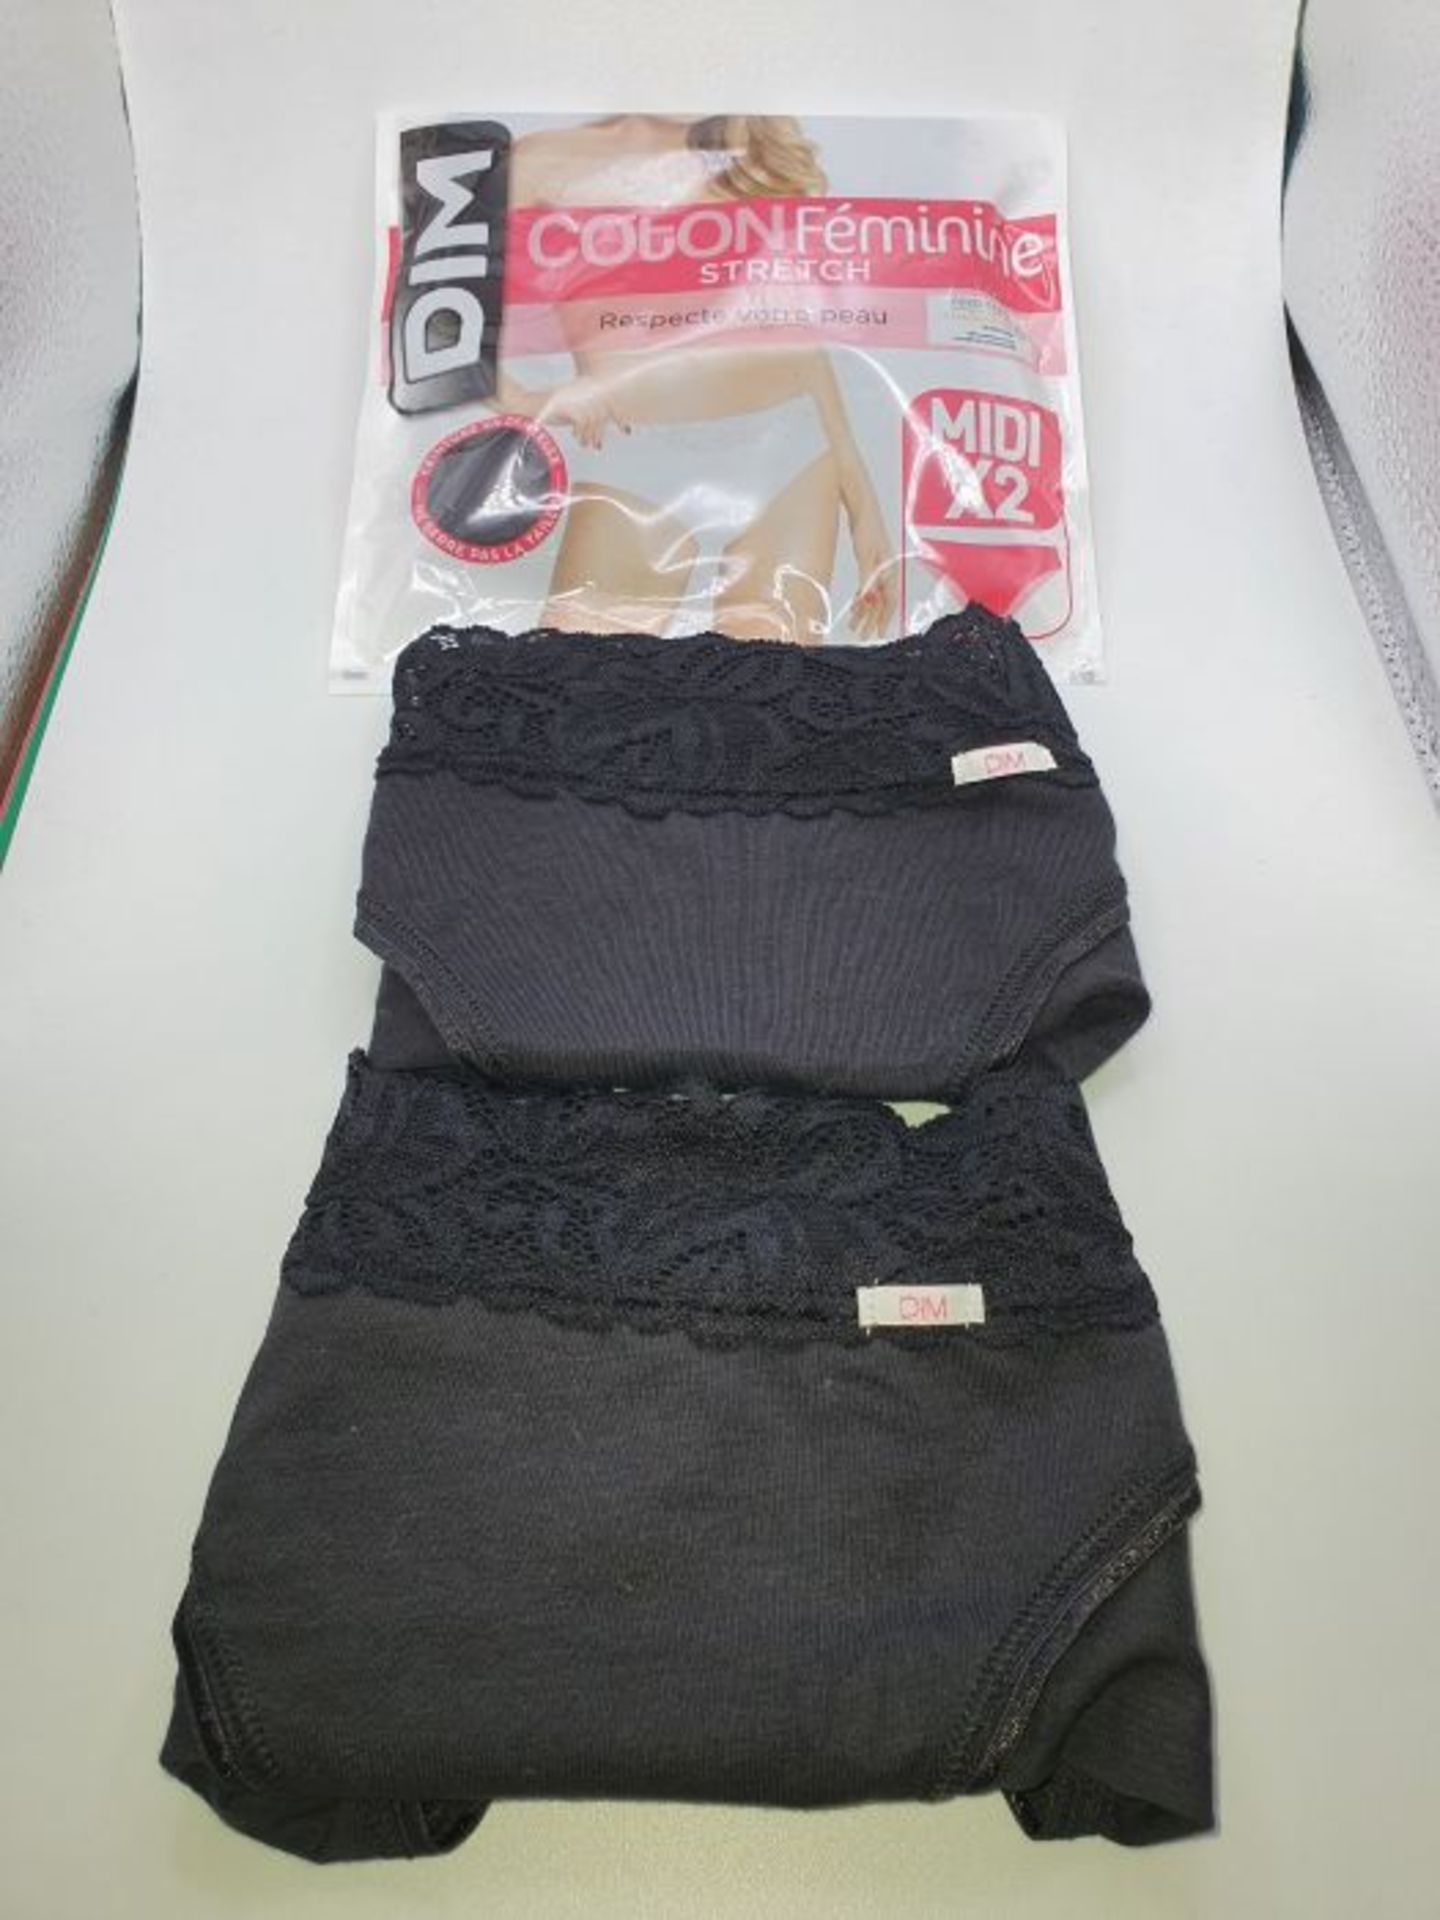 DIM Women's Culotte Coton Feminine Midi X4 (2x2) Knickers, Black (Noir/Noir/Noir/Noir - Image 3 of 3